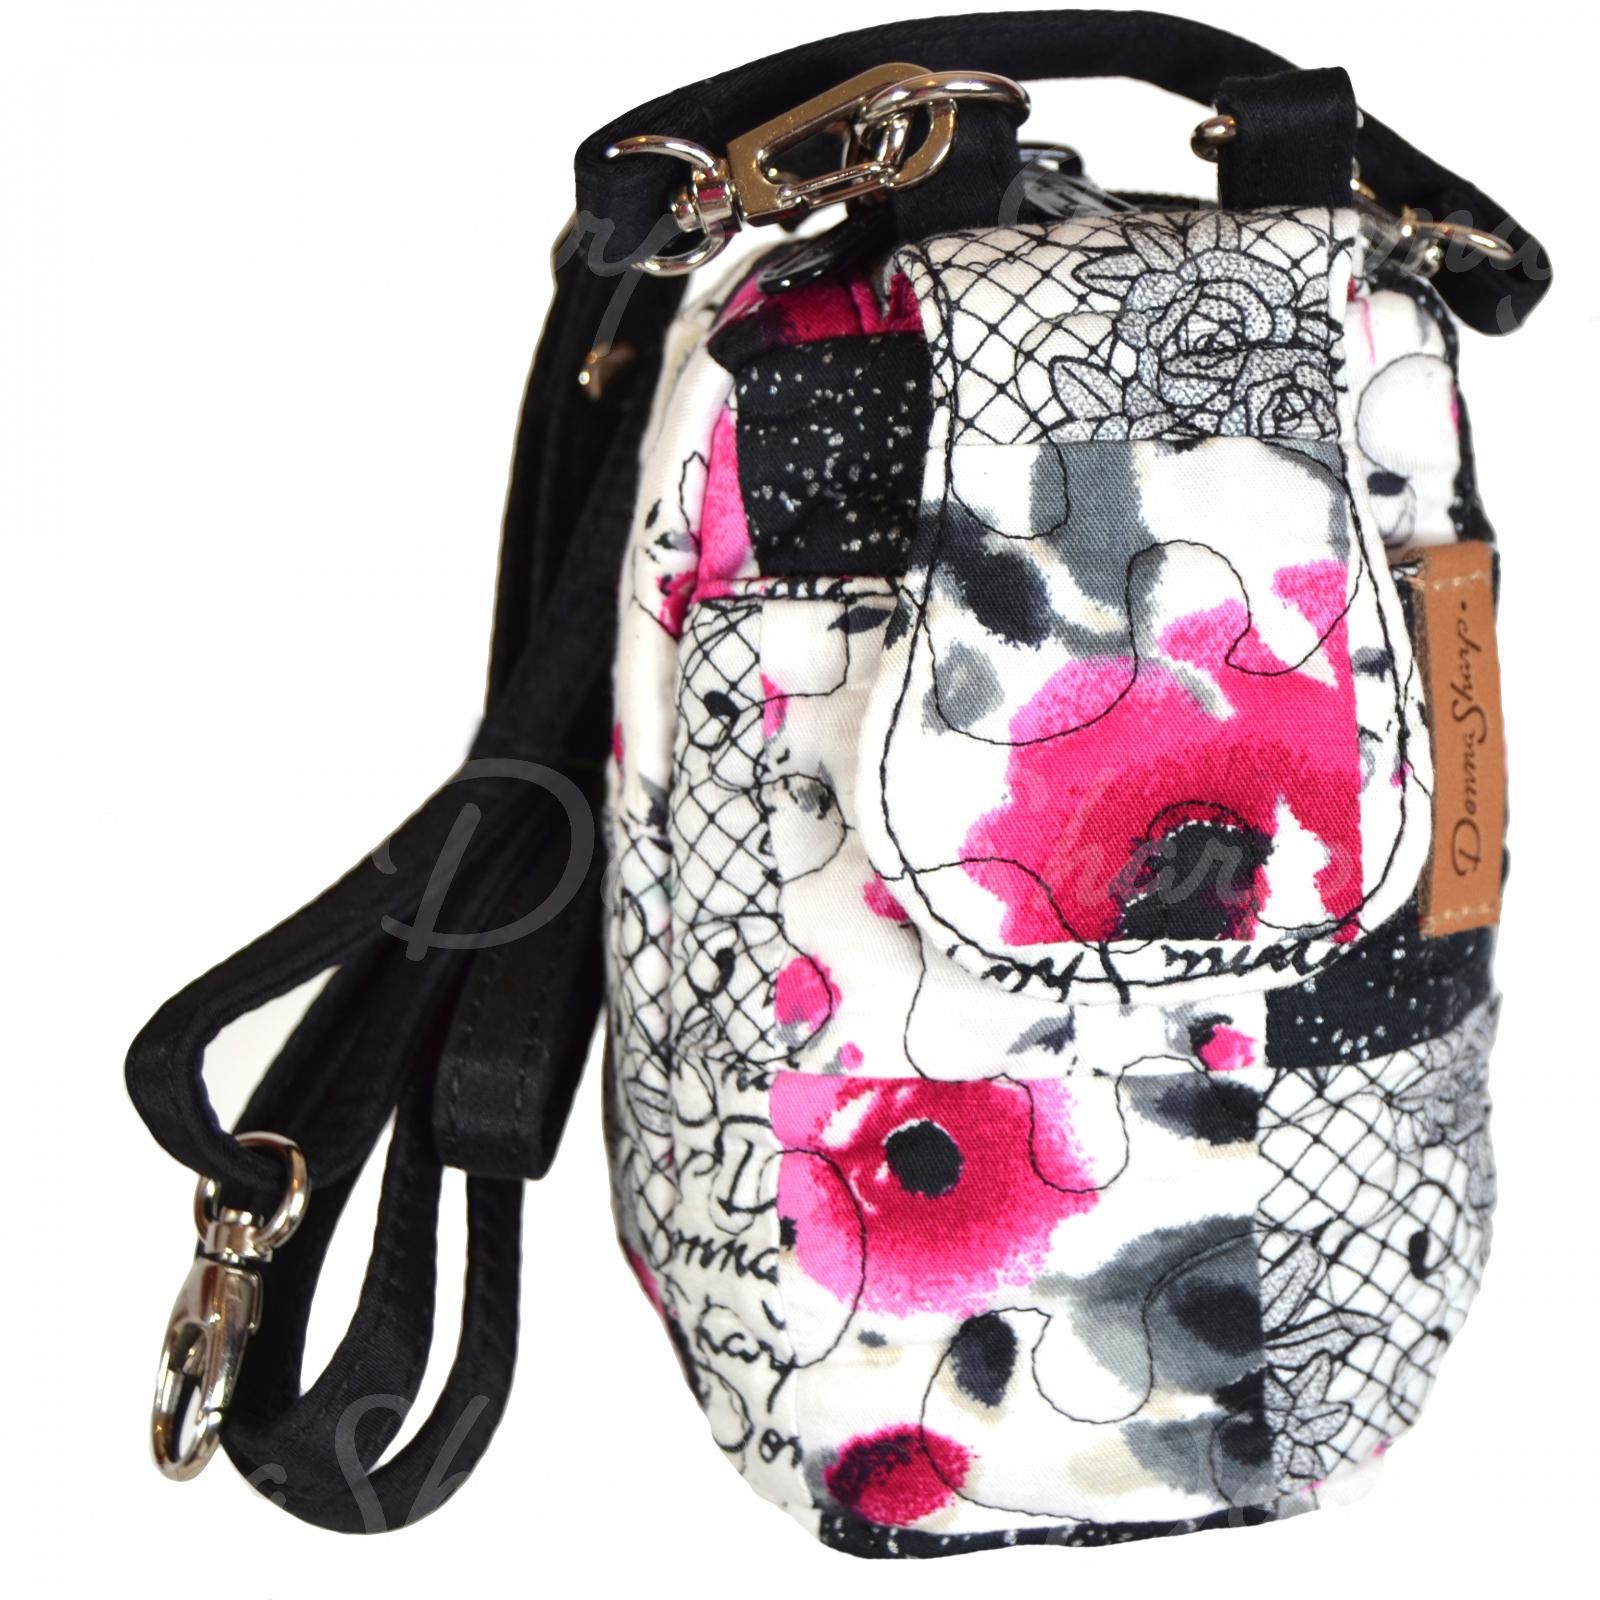 Buy Bliss Women White Handbag White Online @ Best Price in India |  Flipkart.com